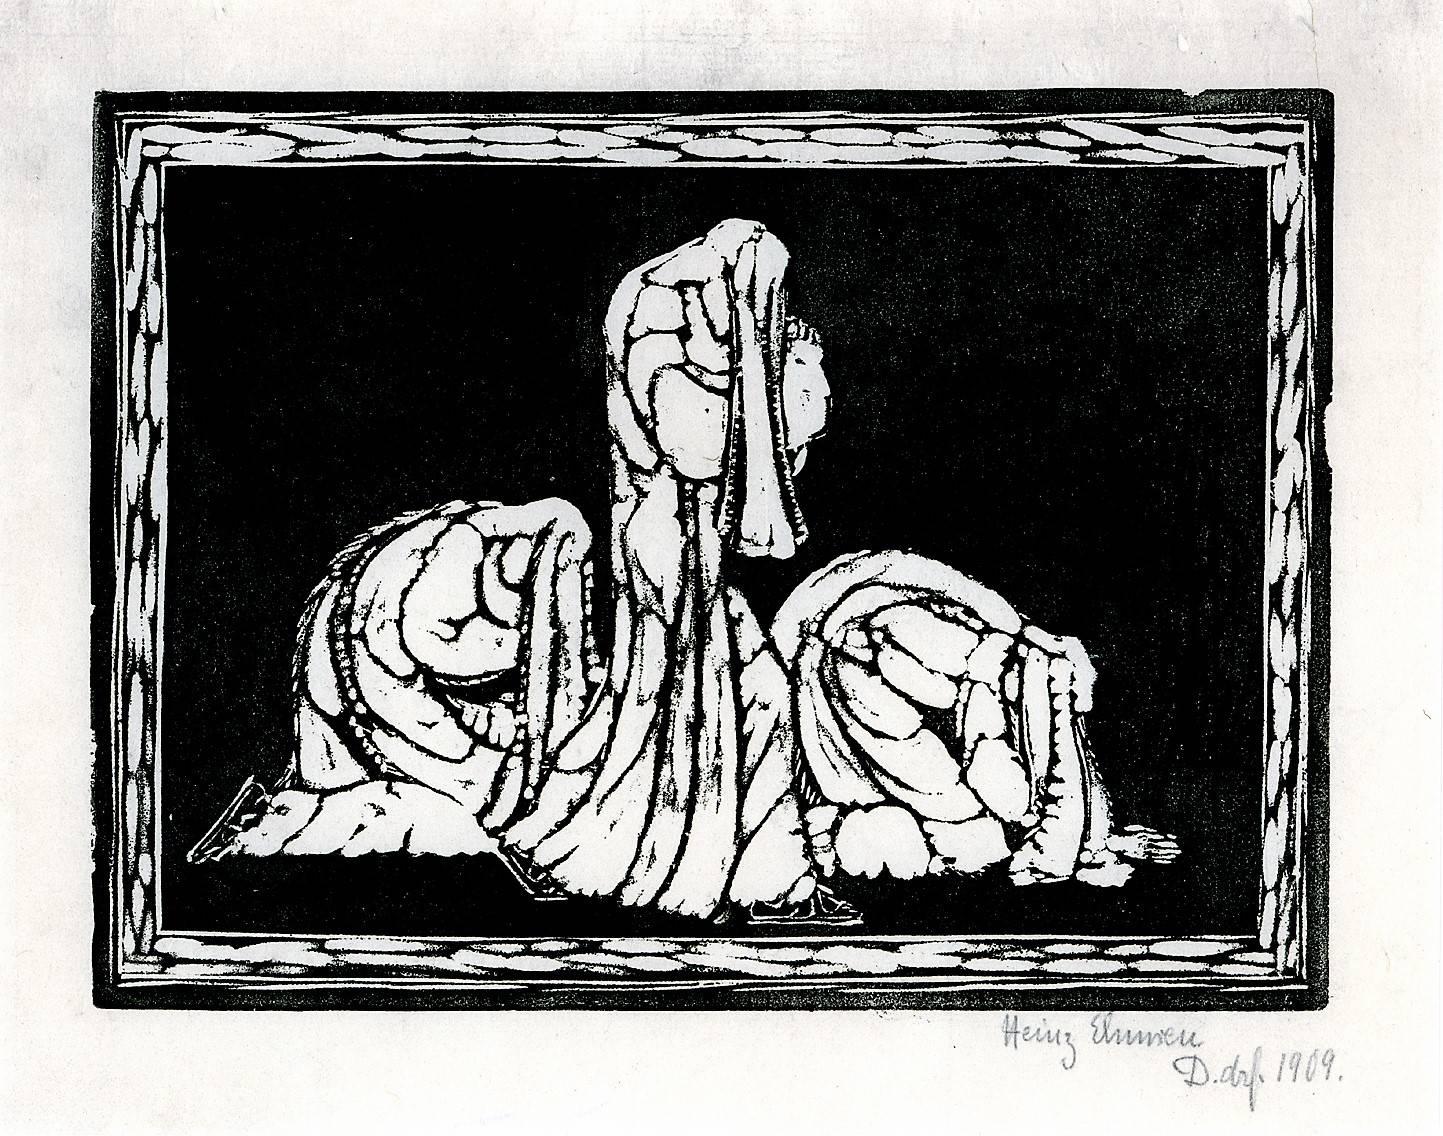 Trauernde. (Mourning) - Print by Heinrich Ehmsen